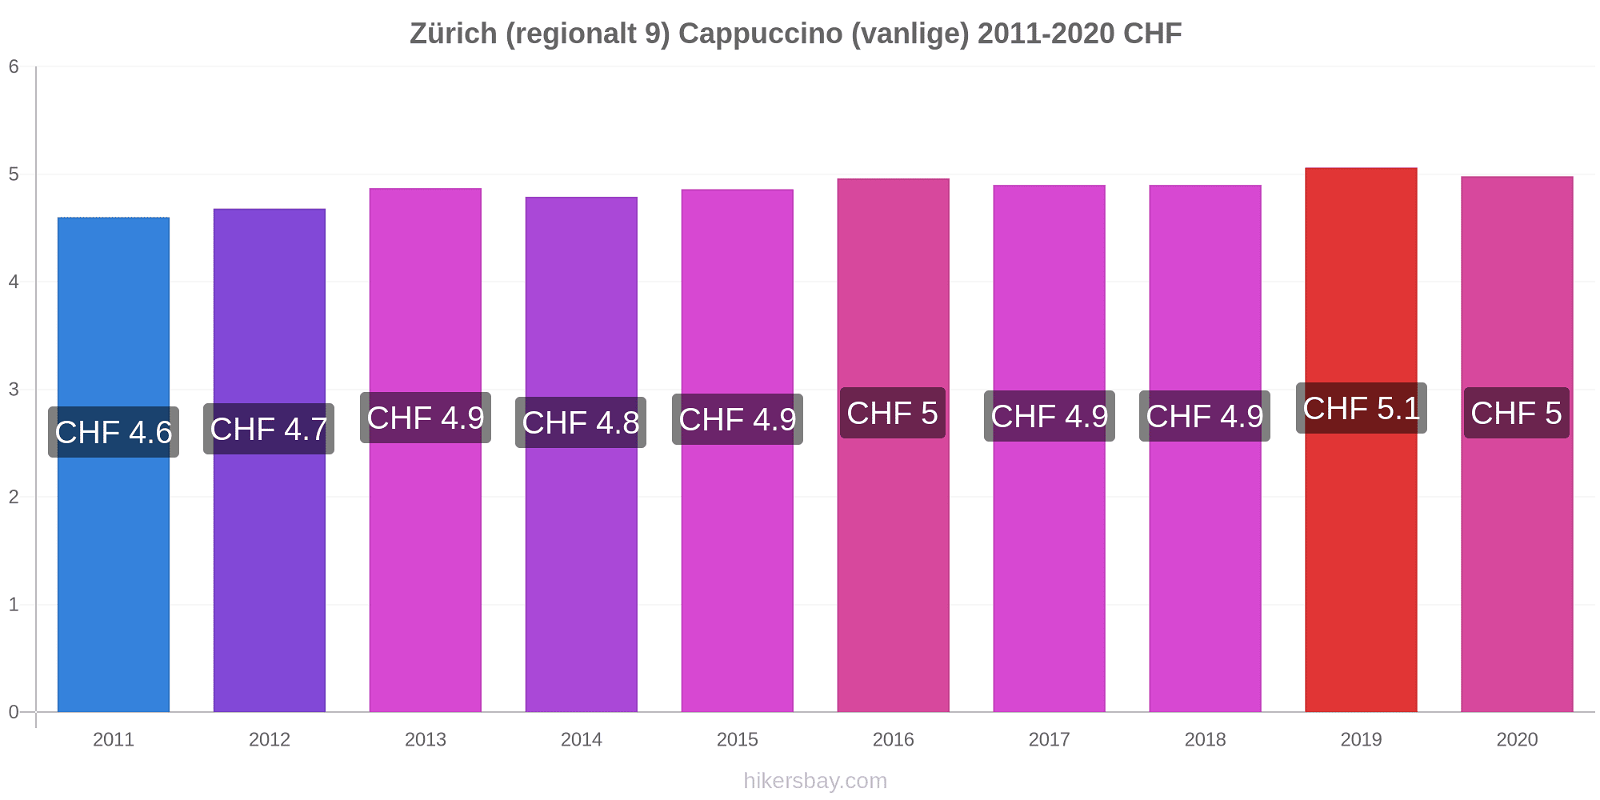 Zürich (regionalt 9) prisendringer Cappuccino (vanlige) hikersbay.com